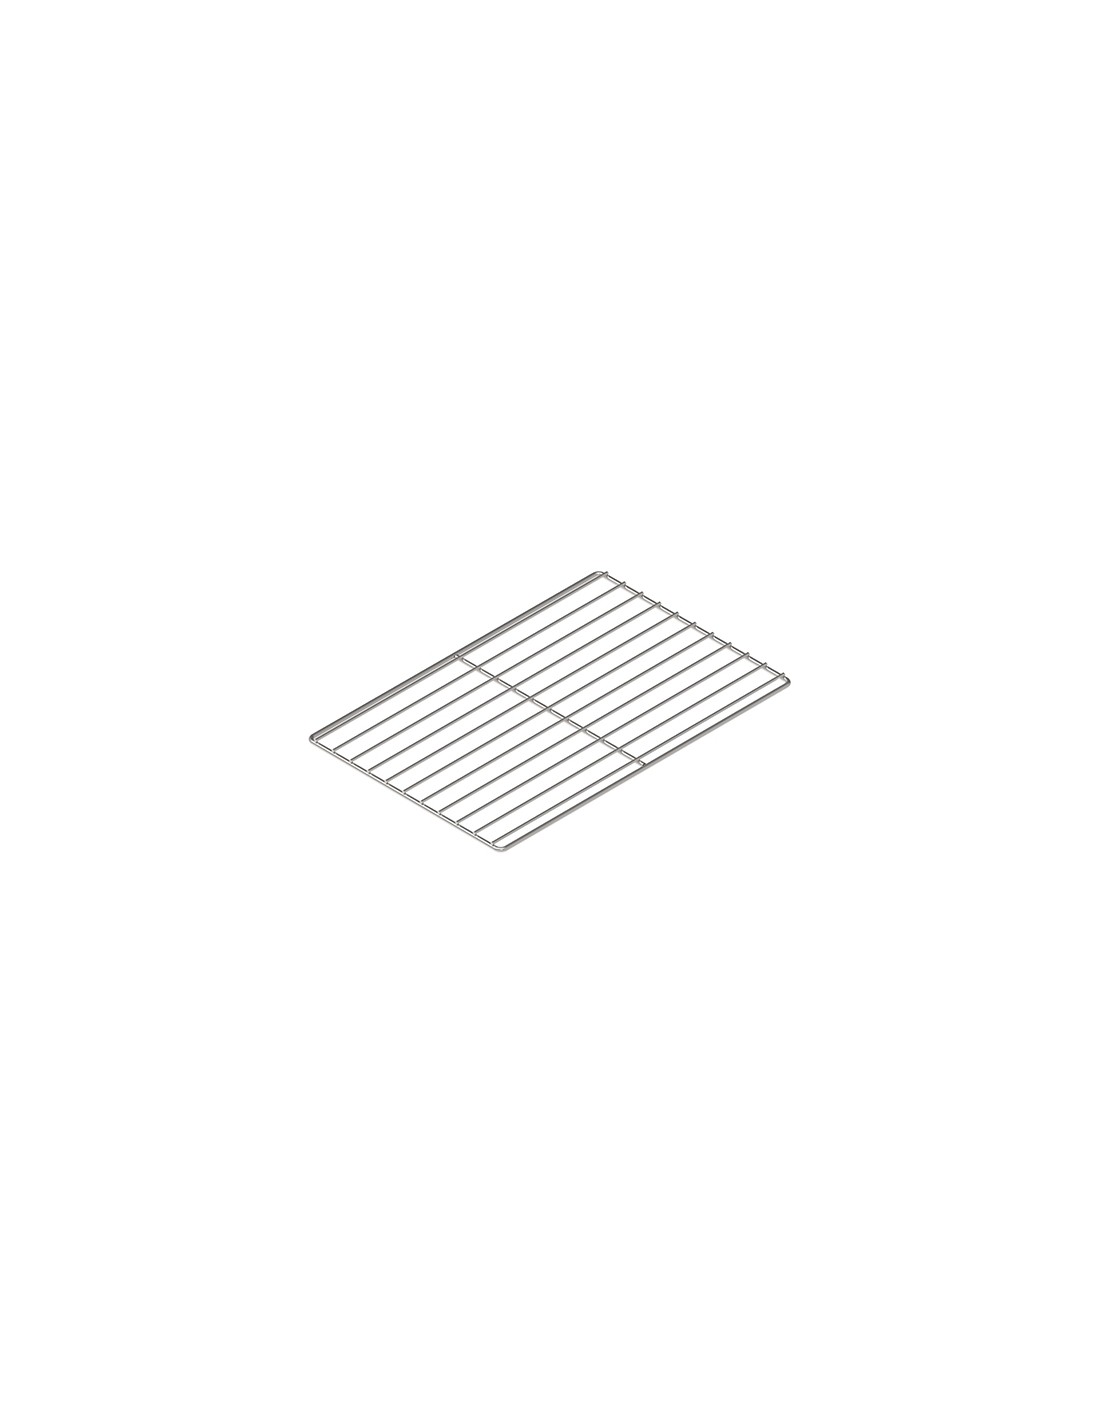 Grid AISI 304 cm 60 x 40 x 1.3 h